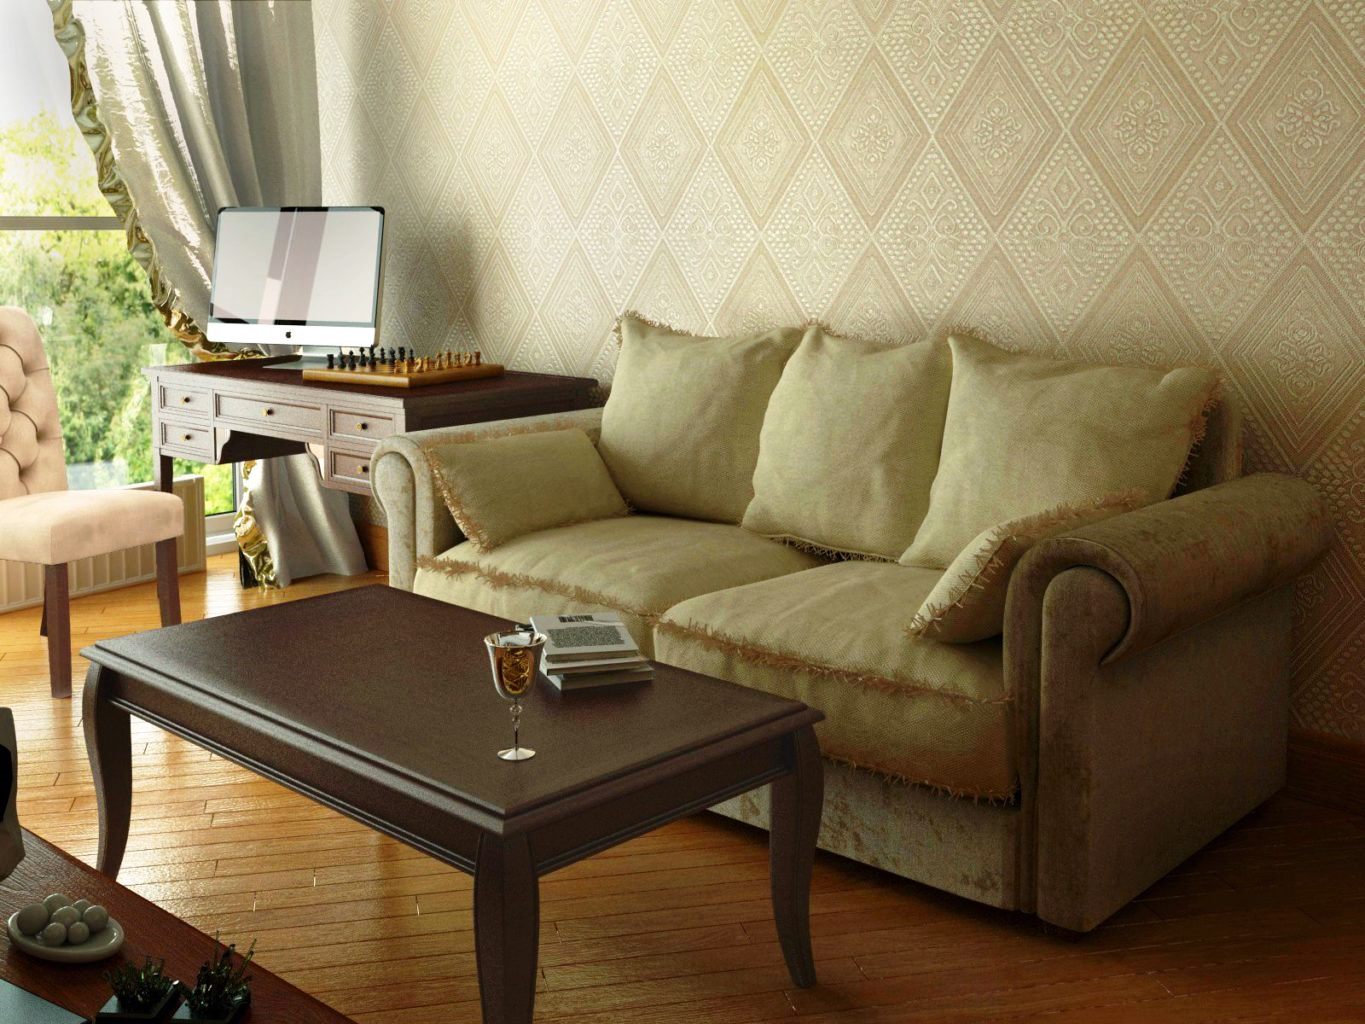 Зона отдыха с диваном и коричневым журнальным столиком В центре зоны отдыха стоит коричневый деревянный журнальный столик  прямоугольной формы. Небольшой диван с мягкими подушками.